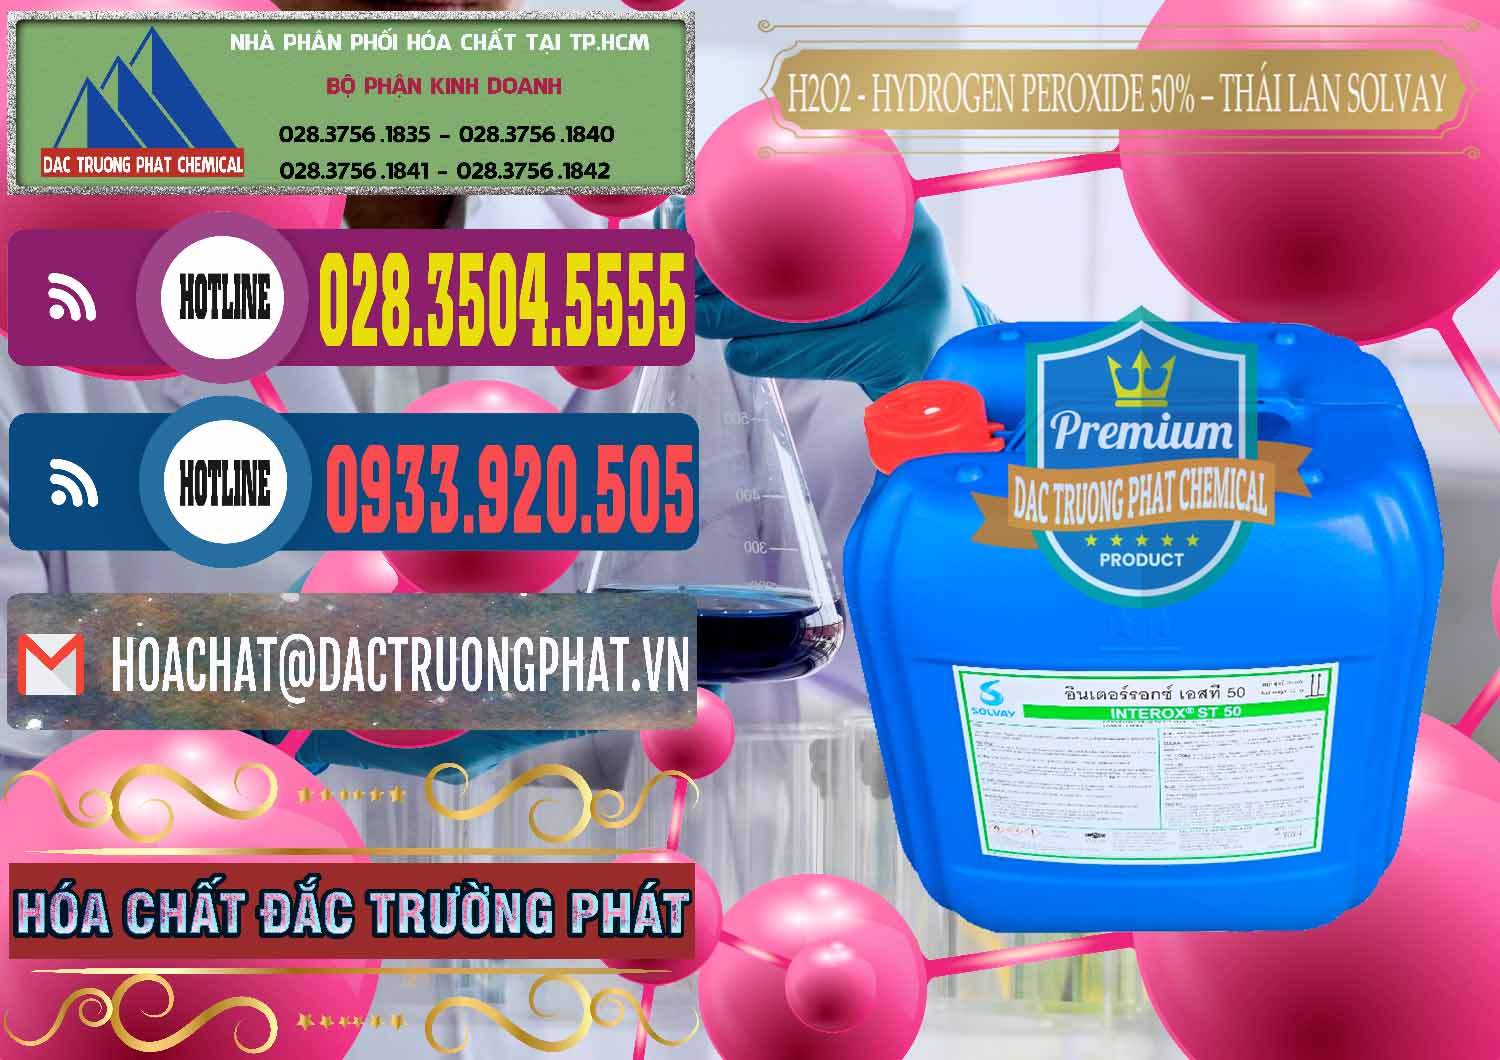 Chuyên cung ứng - bán H2O2 - Hydrogen Peroxide 50% Thái Lan Solvay - 0068 - Cung ứng - phân phối hóa chất tại TP.HCM - muabanhoachat.com.vn